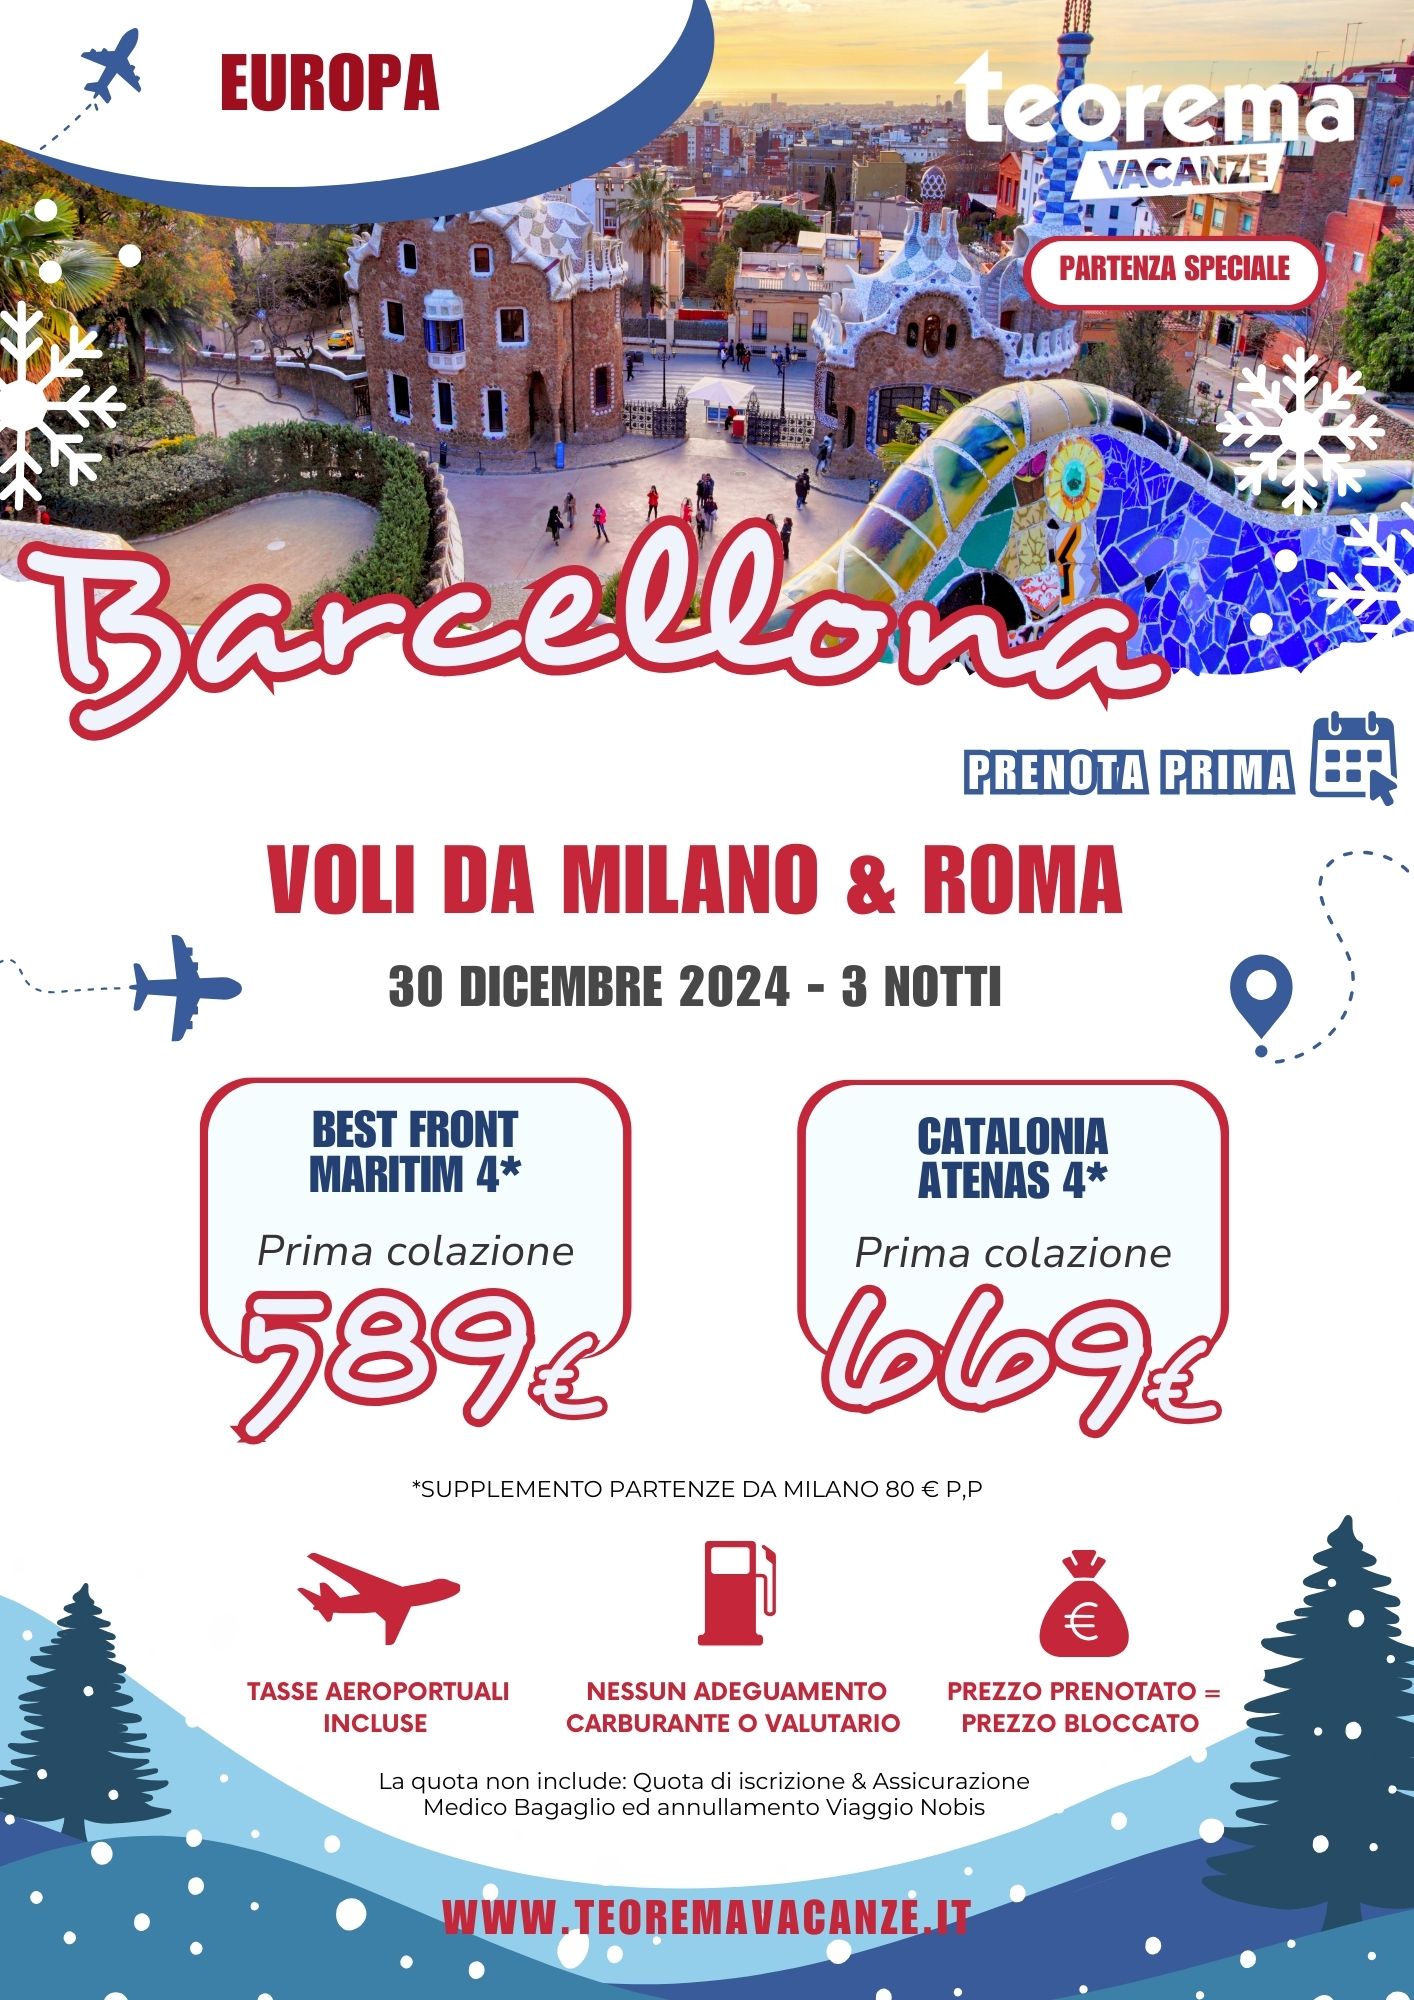 TEOREMA WINTER 2025 - BARCELLONA DA MILANO & ROMA